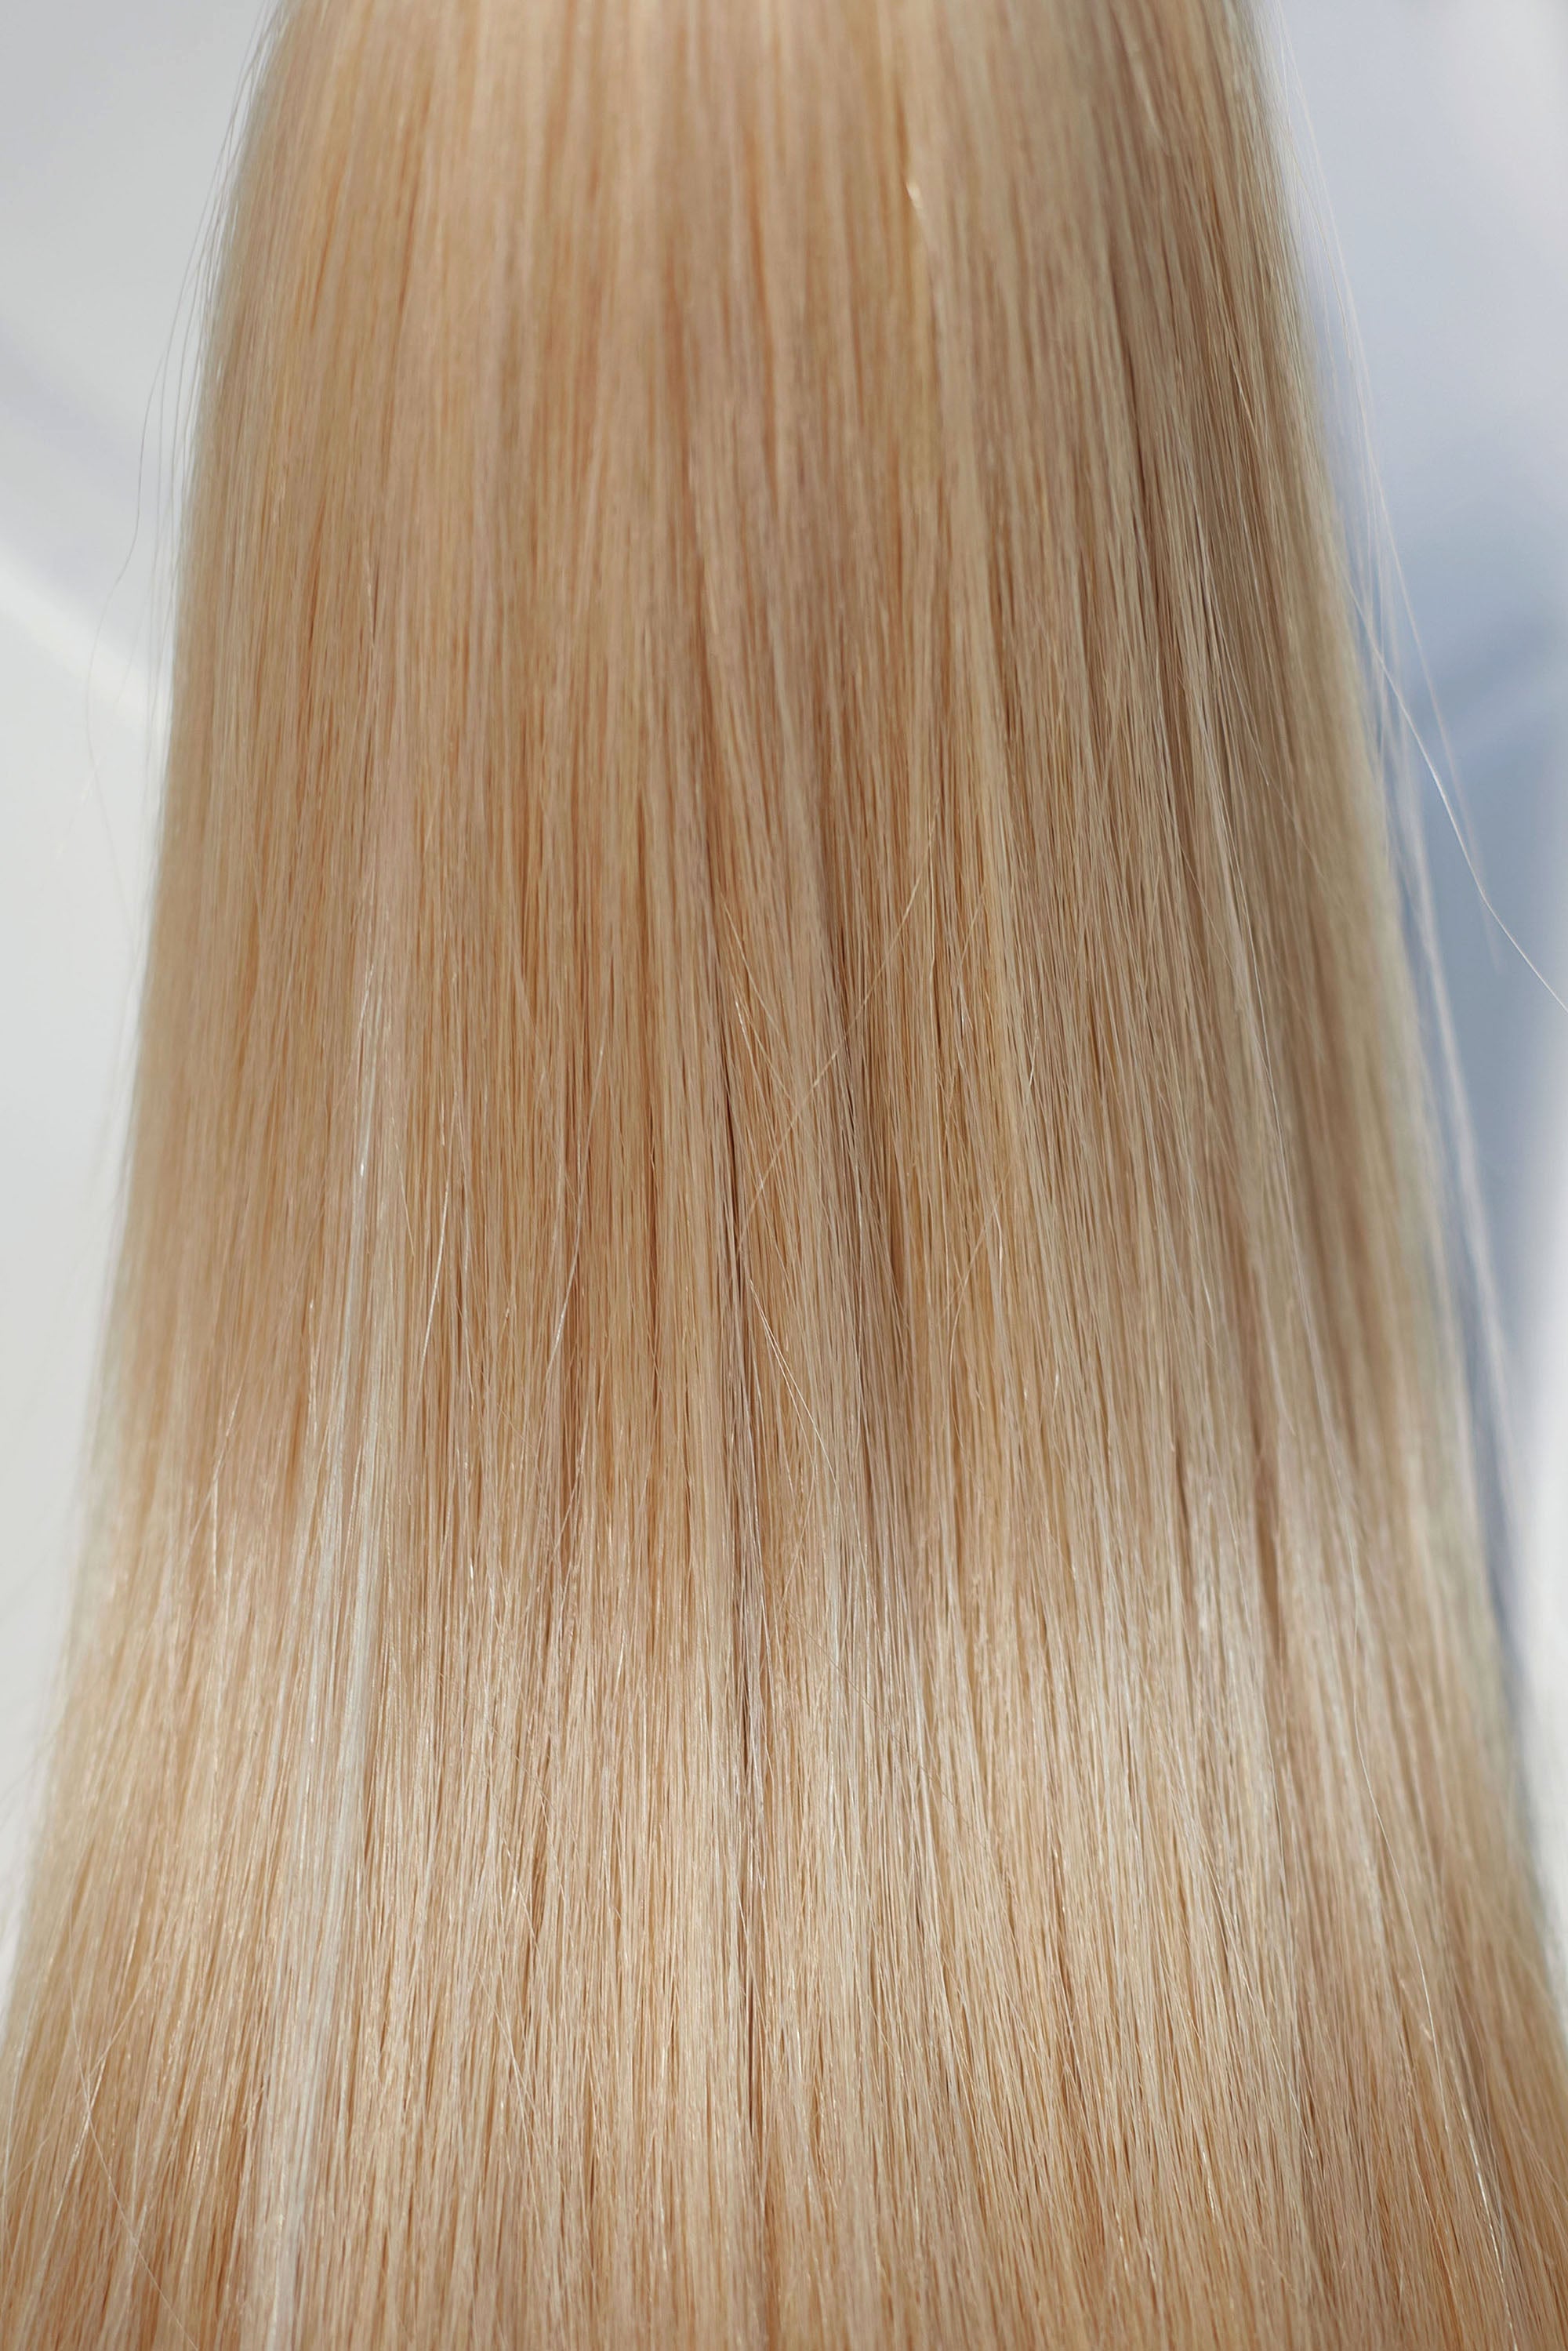 Behair professional Keratin Tip "Premium" 22" (55cm) Natural Straight Light Gold Blond #24 - 25g (Standart - 0.7g each pcs) hair extensions